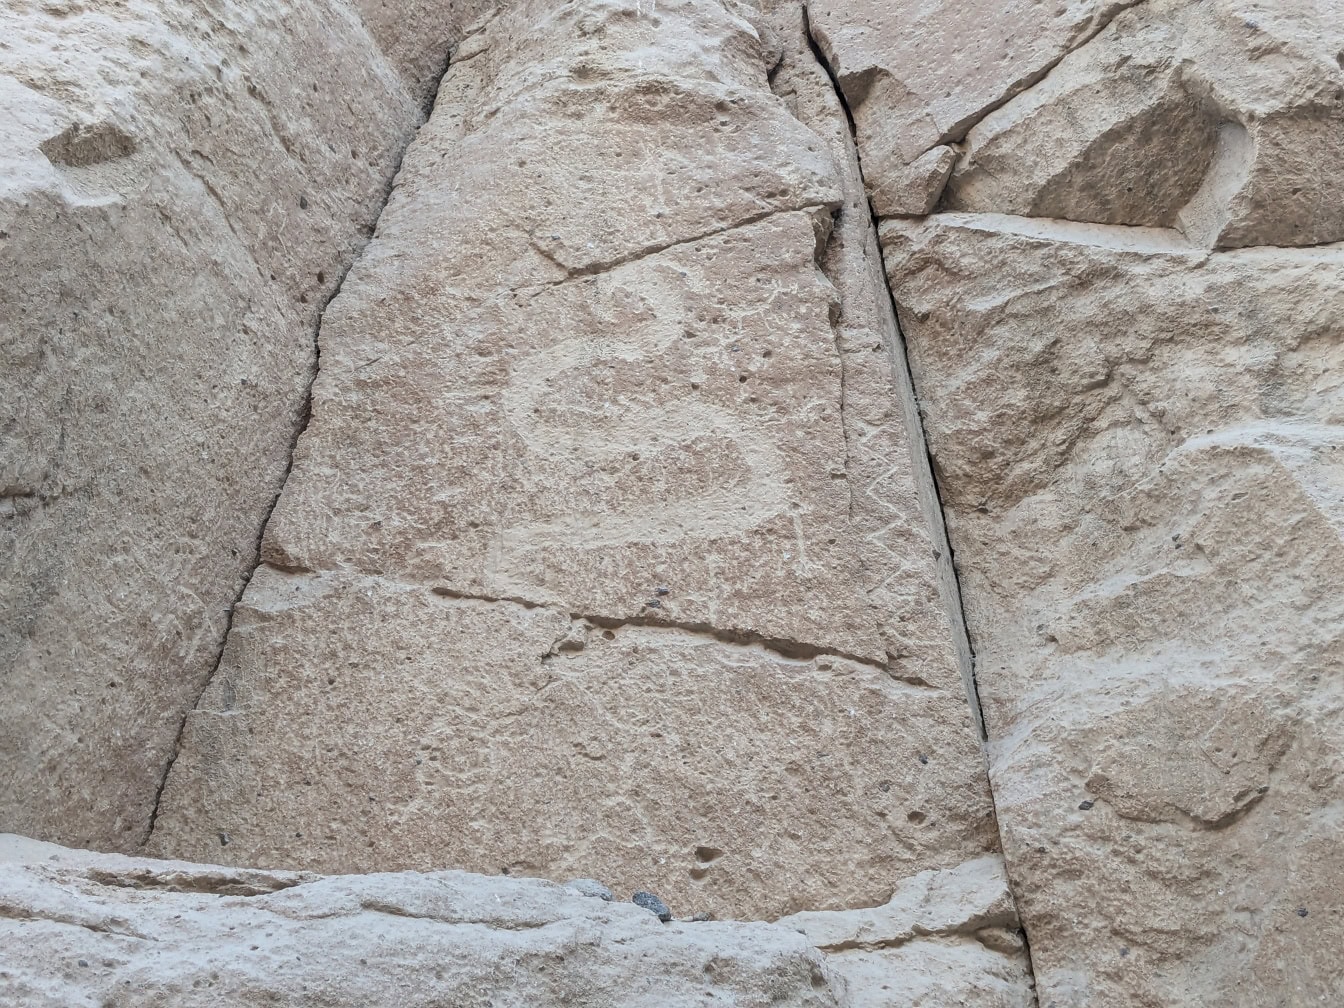 Kiveen kaiverrettu kalliopiirros, joka kuvaa käärmettä tai lohikäärmettä muistuttavaa eläintä, kivikauden taidetta, joka löytyy Perusta Etelä-Amerikasta